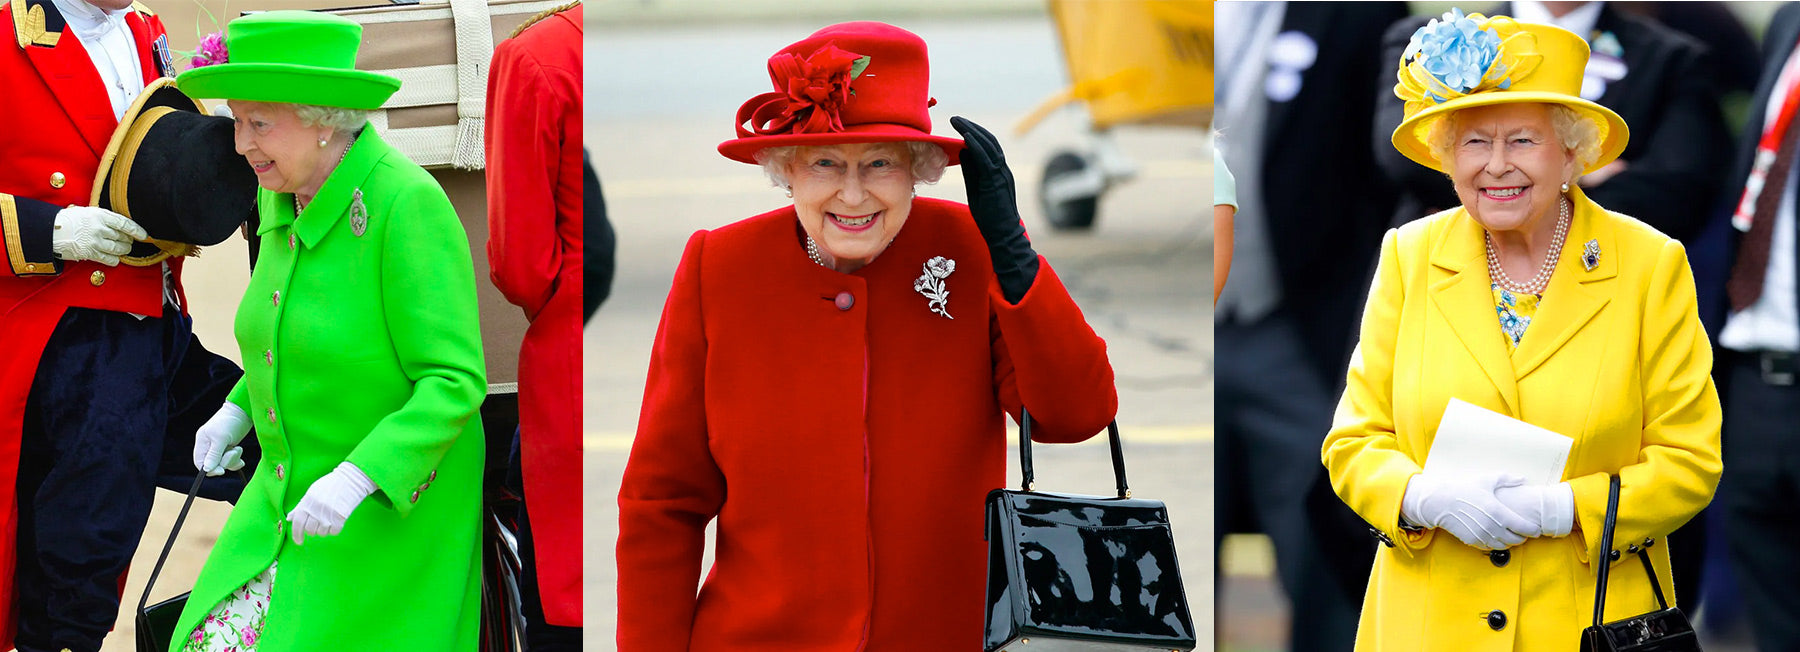 The Queen's Jubilee Edit